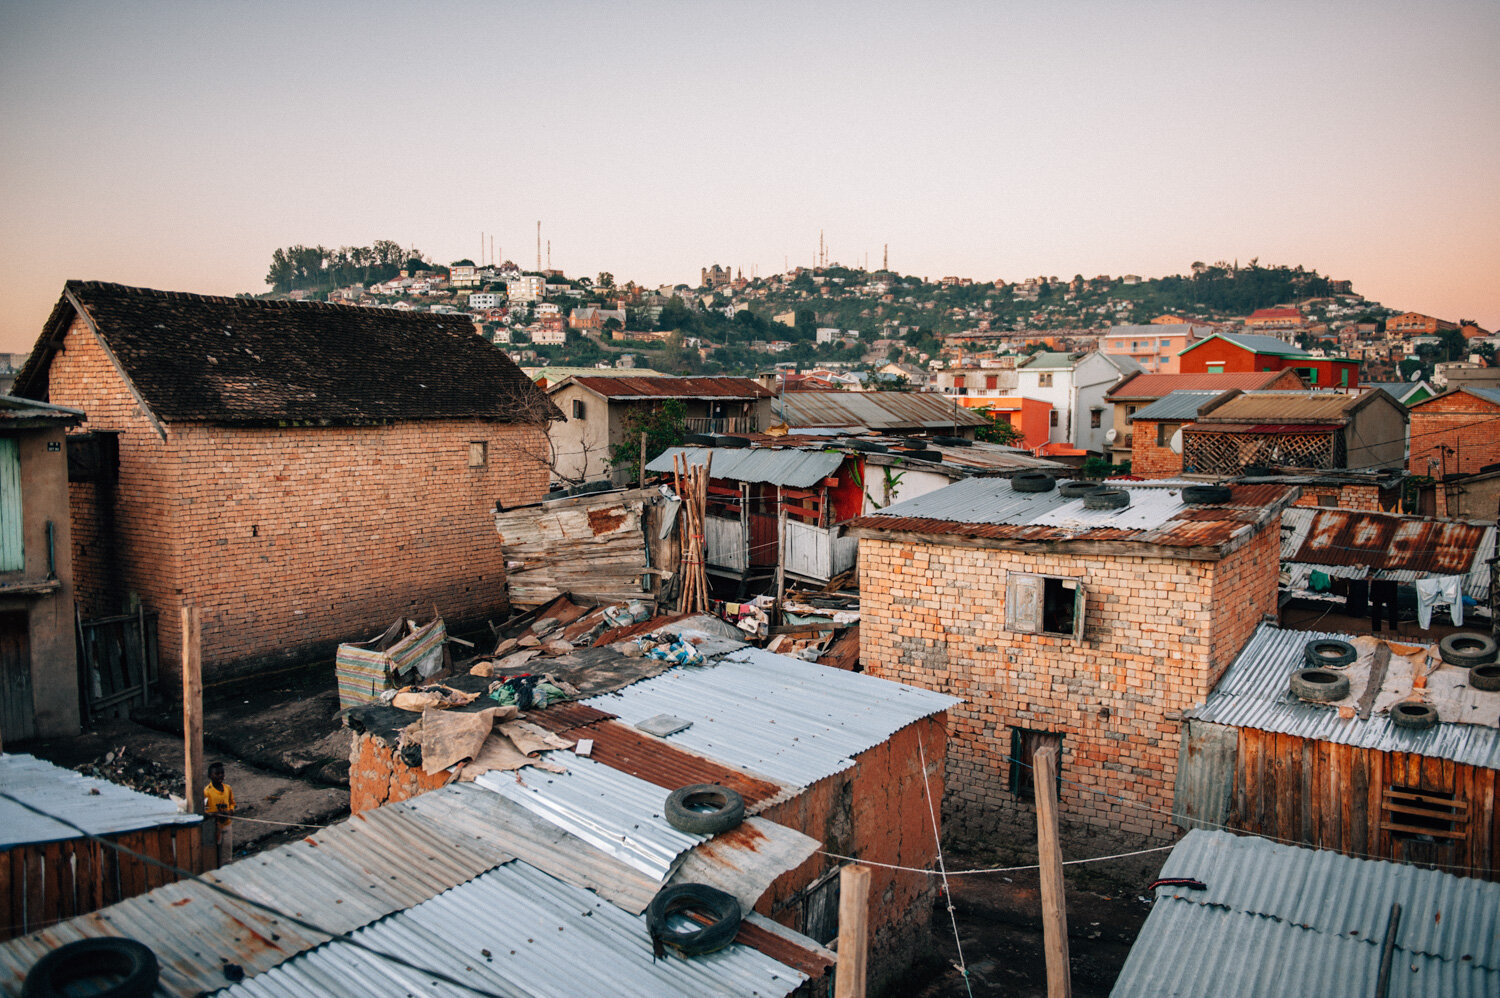  Enfants des rues. Lieux d’habitation. Bas quartiers. Tananarive. Avril 2018 // Street children. Places of habitation. Low quarters. Antananarivo. April 2018. 